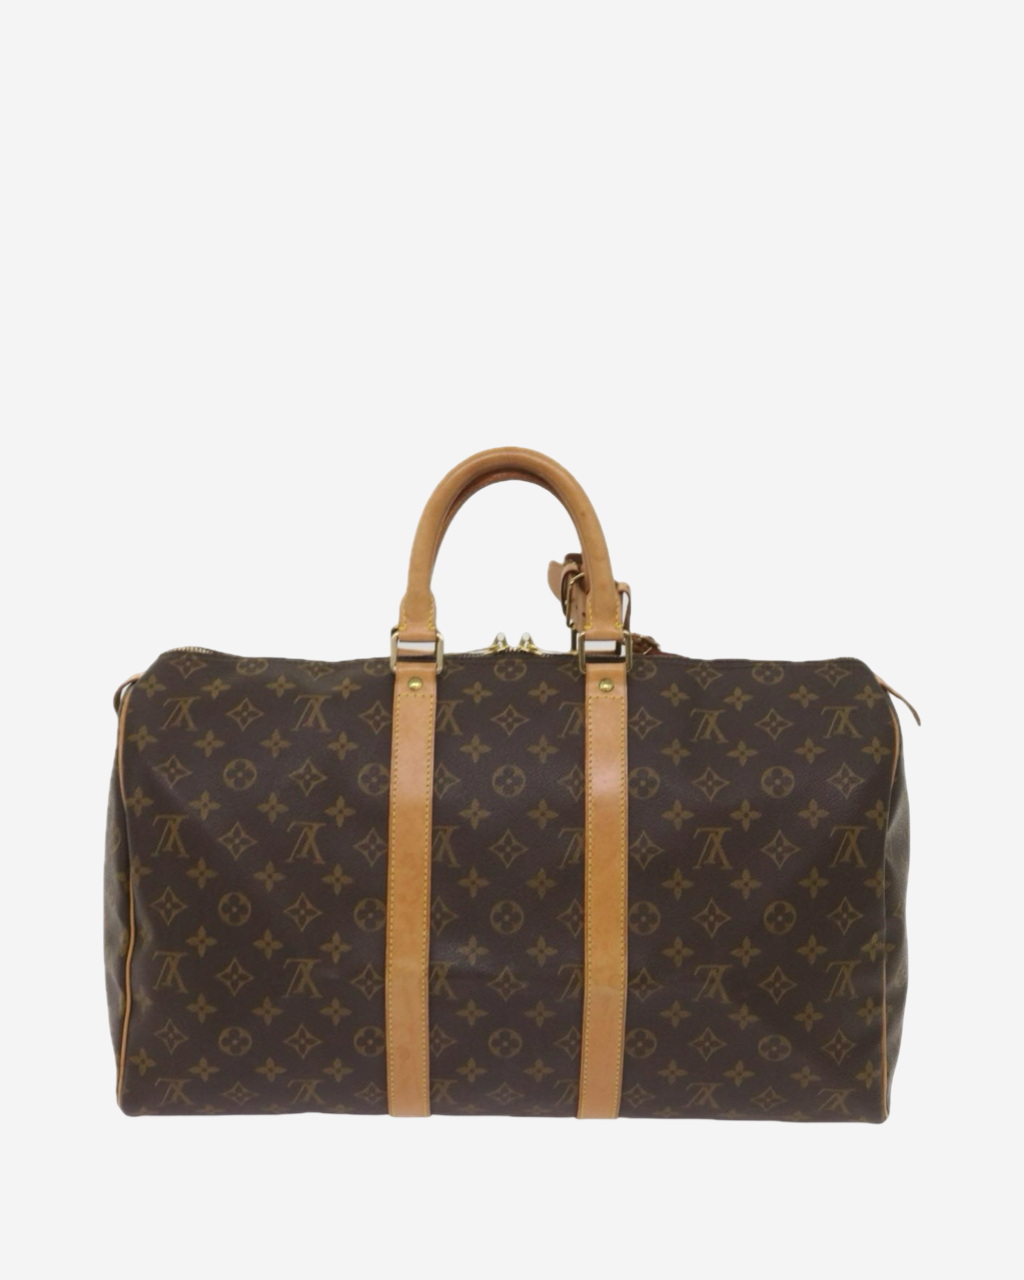 Louis Vuitton Keepall 45 Bag